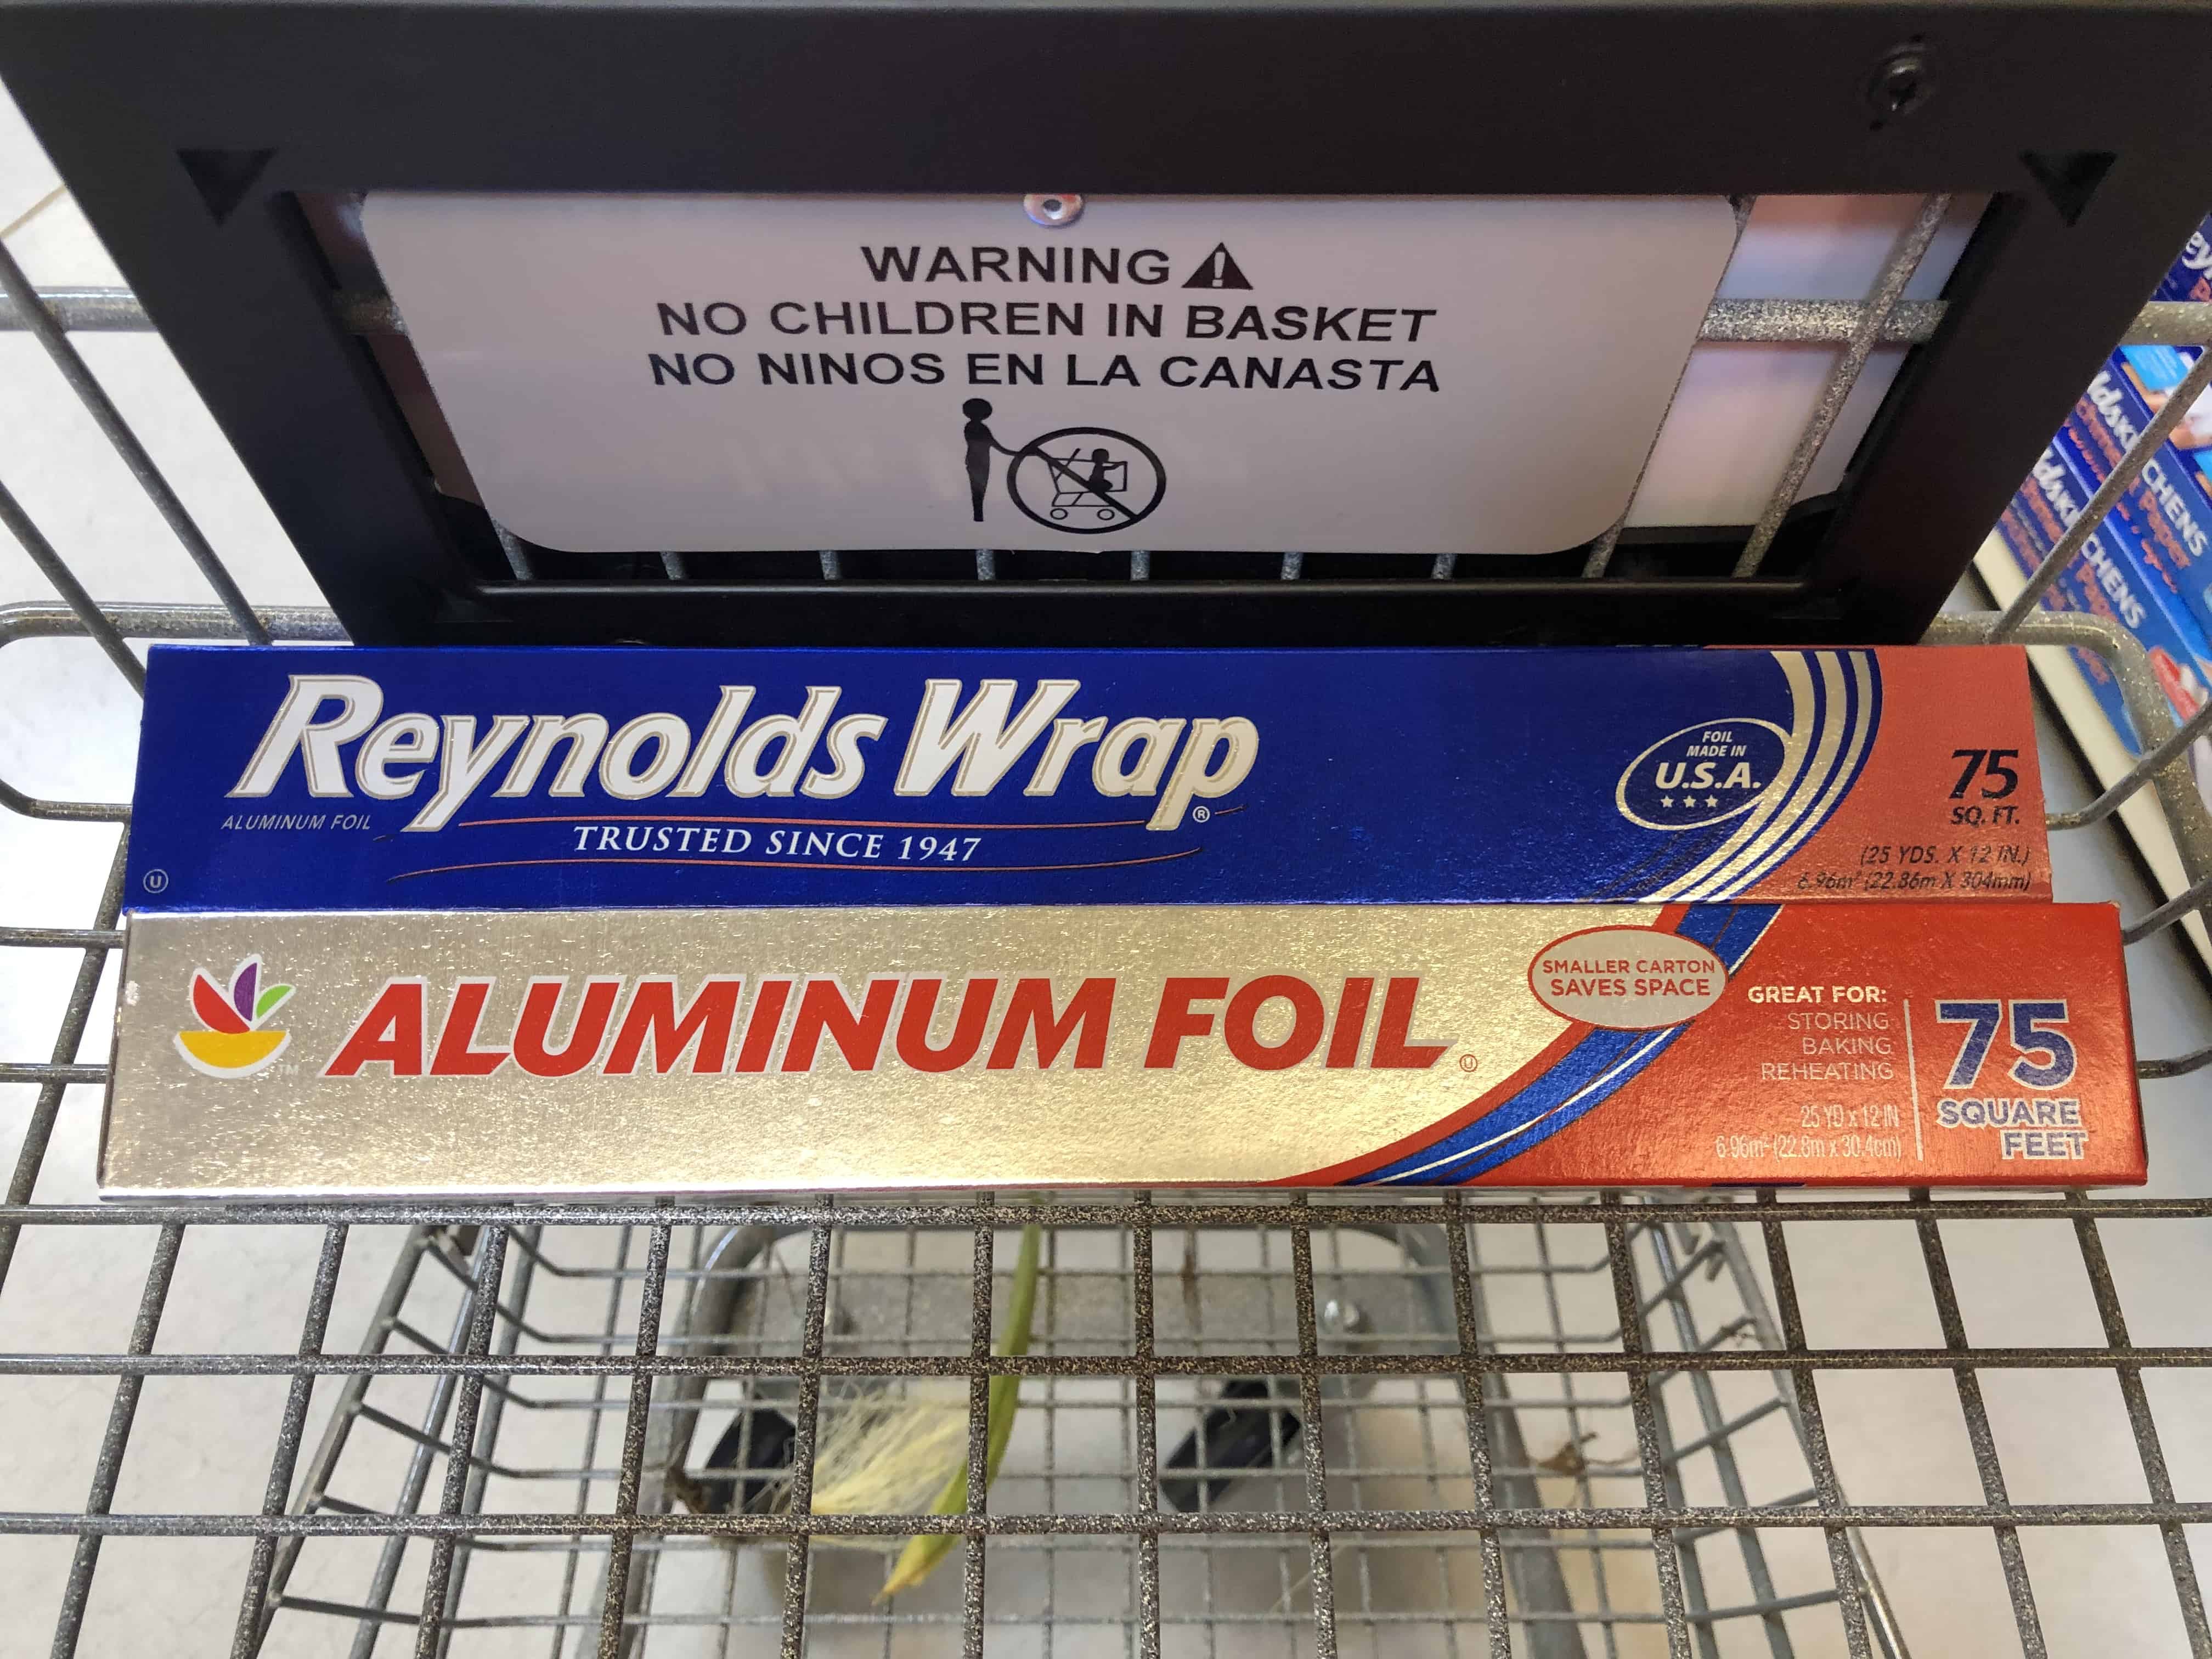 Giant: Reynold’s & Giant Brand Aluminum Foil Just $1.70 Each Starting 9/27!